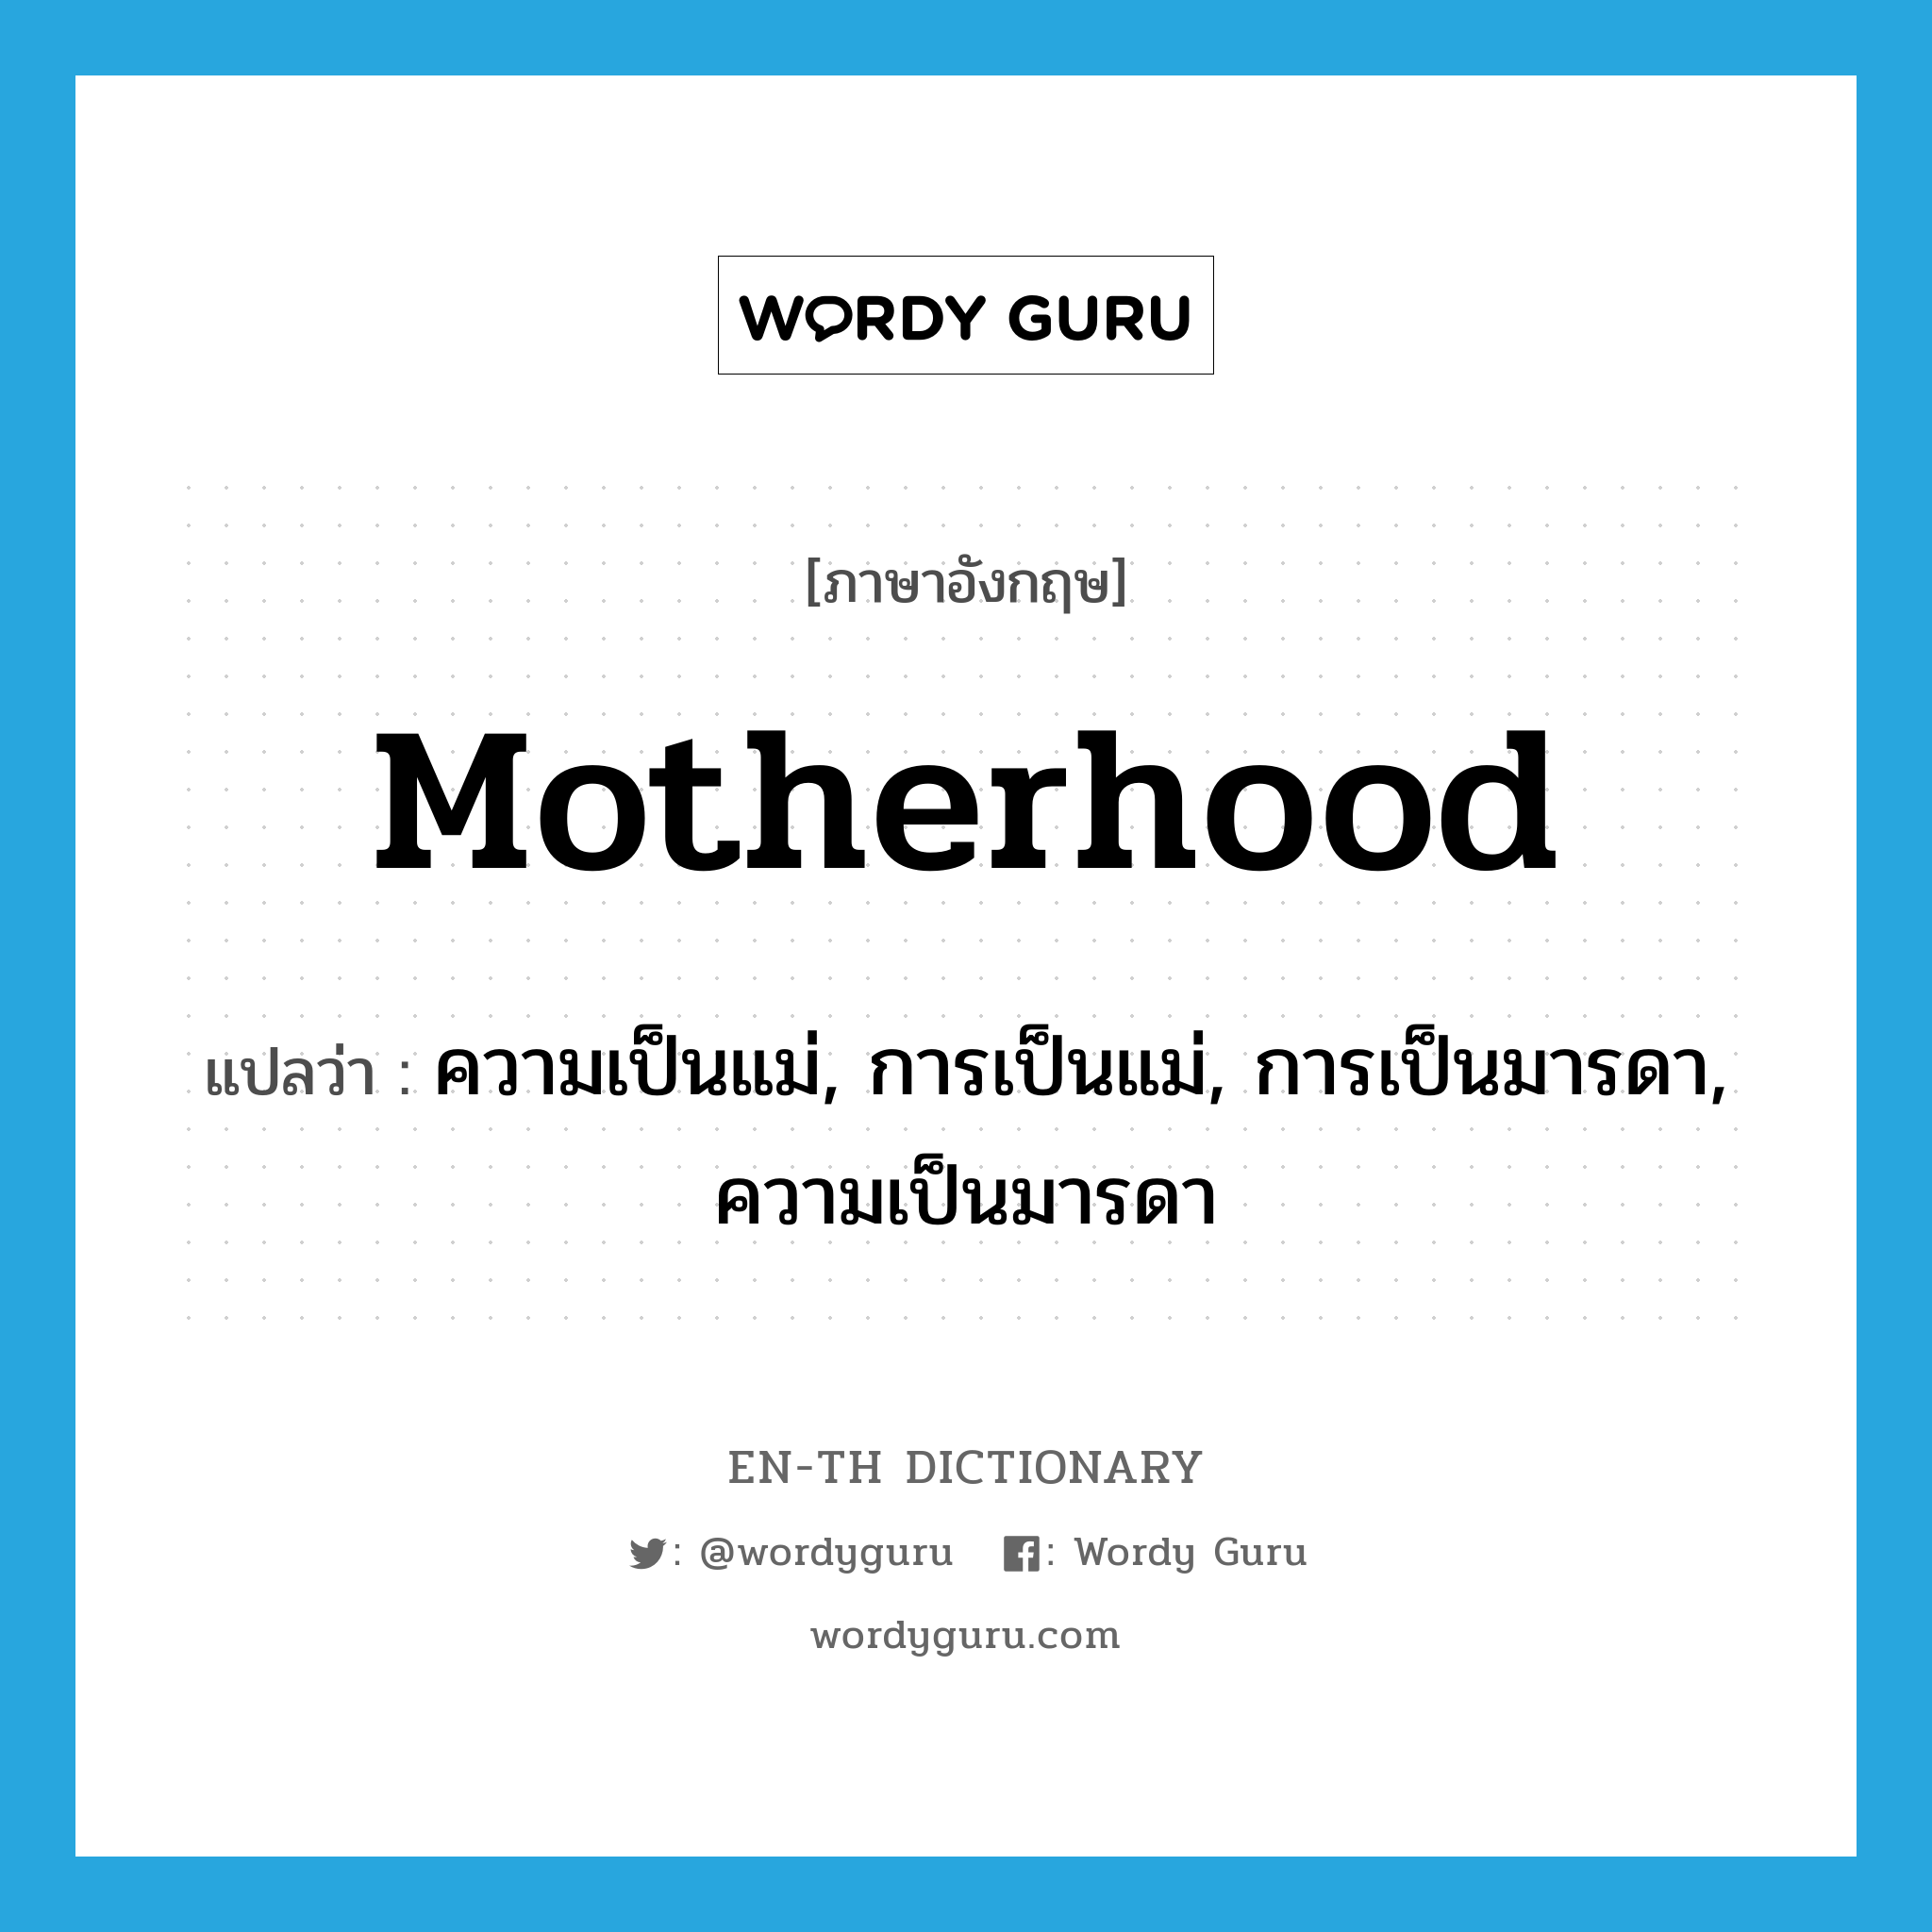 ความเป็นแม่, การเป็นแม่, การเป็นมารดา, ความเป็นมารดา ภาษาอังกฤษ?, คำศัพท์ภาษาอังกฤษ ความเป็นแม่, การเป็นแม่, การเป็นมารดา, ความเป็นมารดา แปลว่า motherhood ประเภท N หมวด N